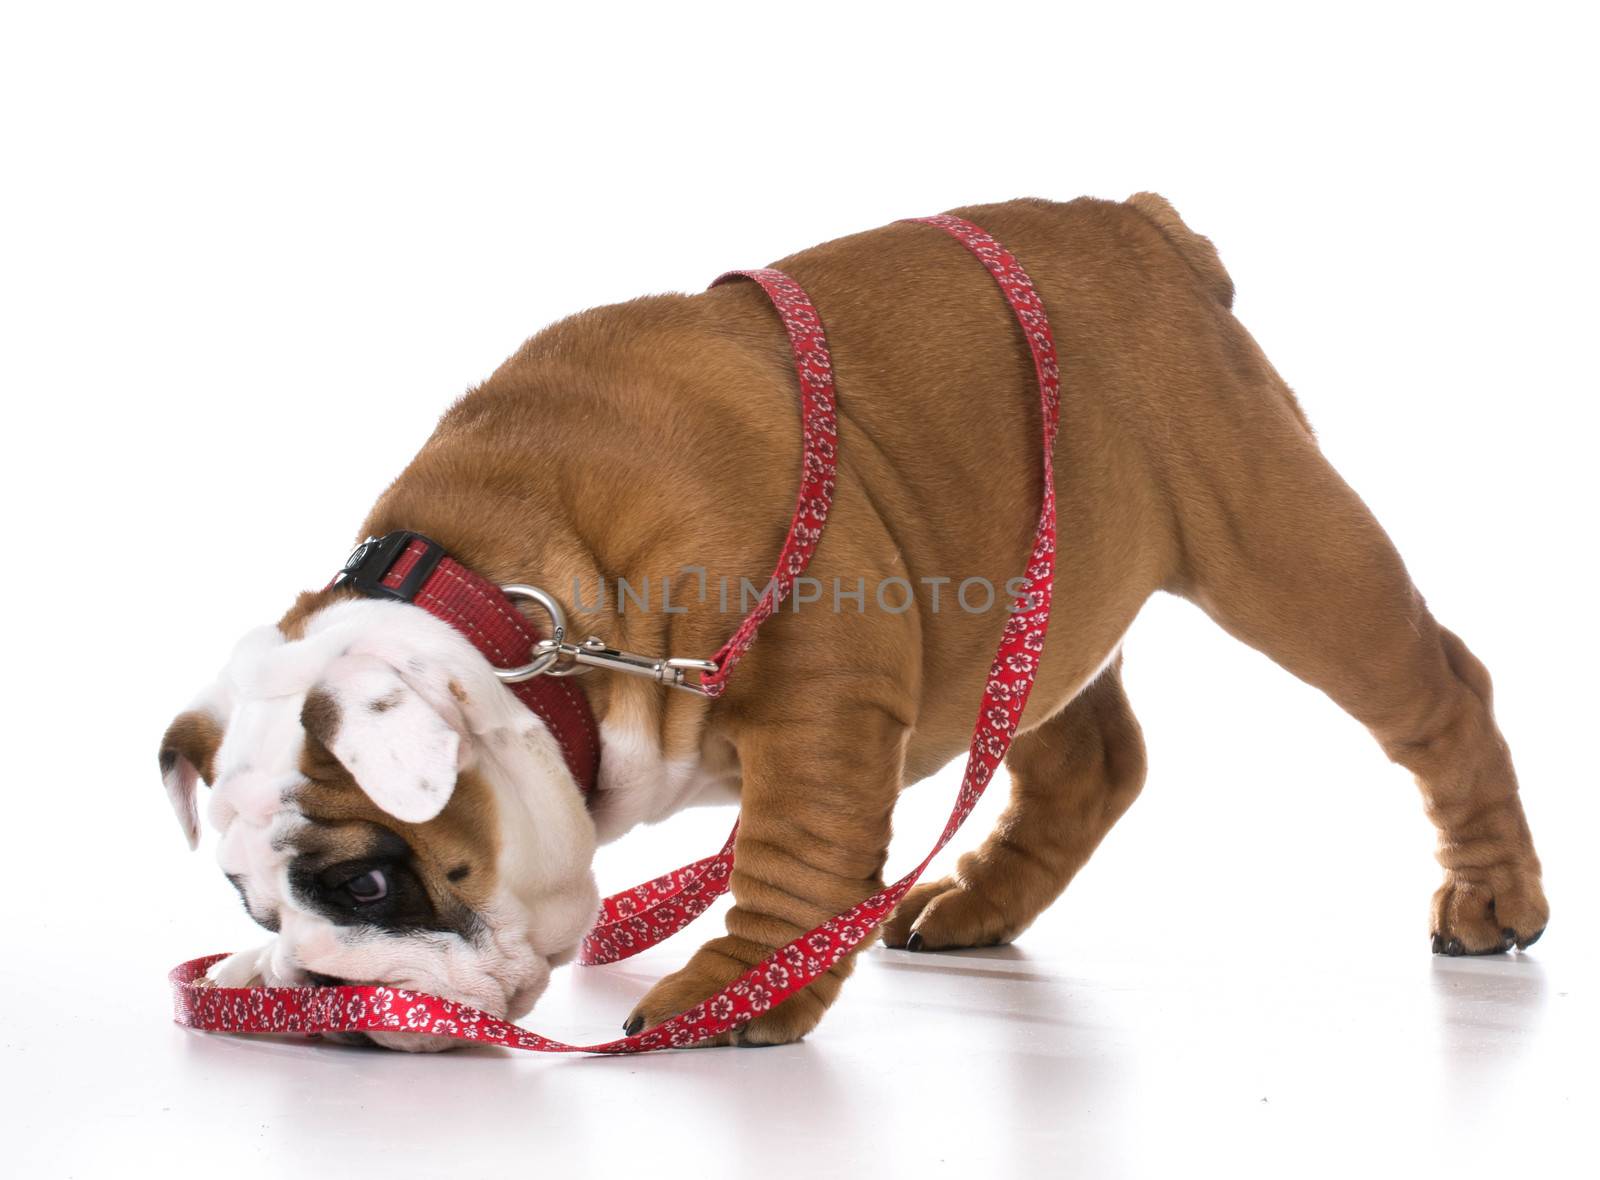 leash training a puppy - bulldog - three months old